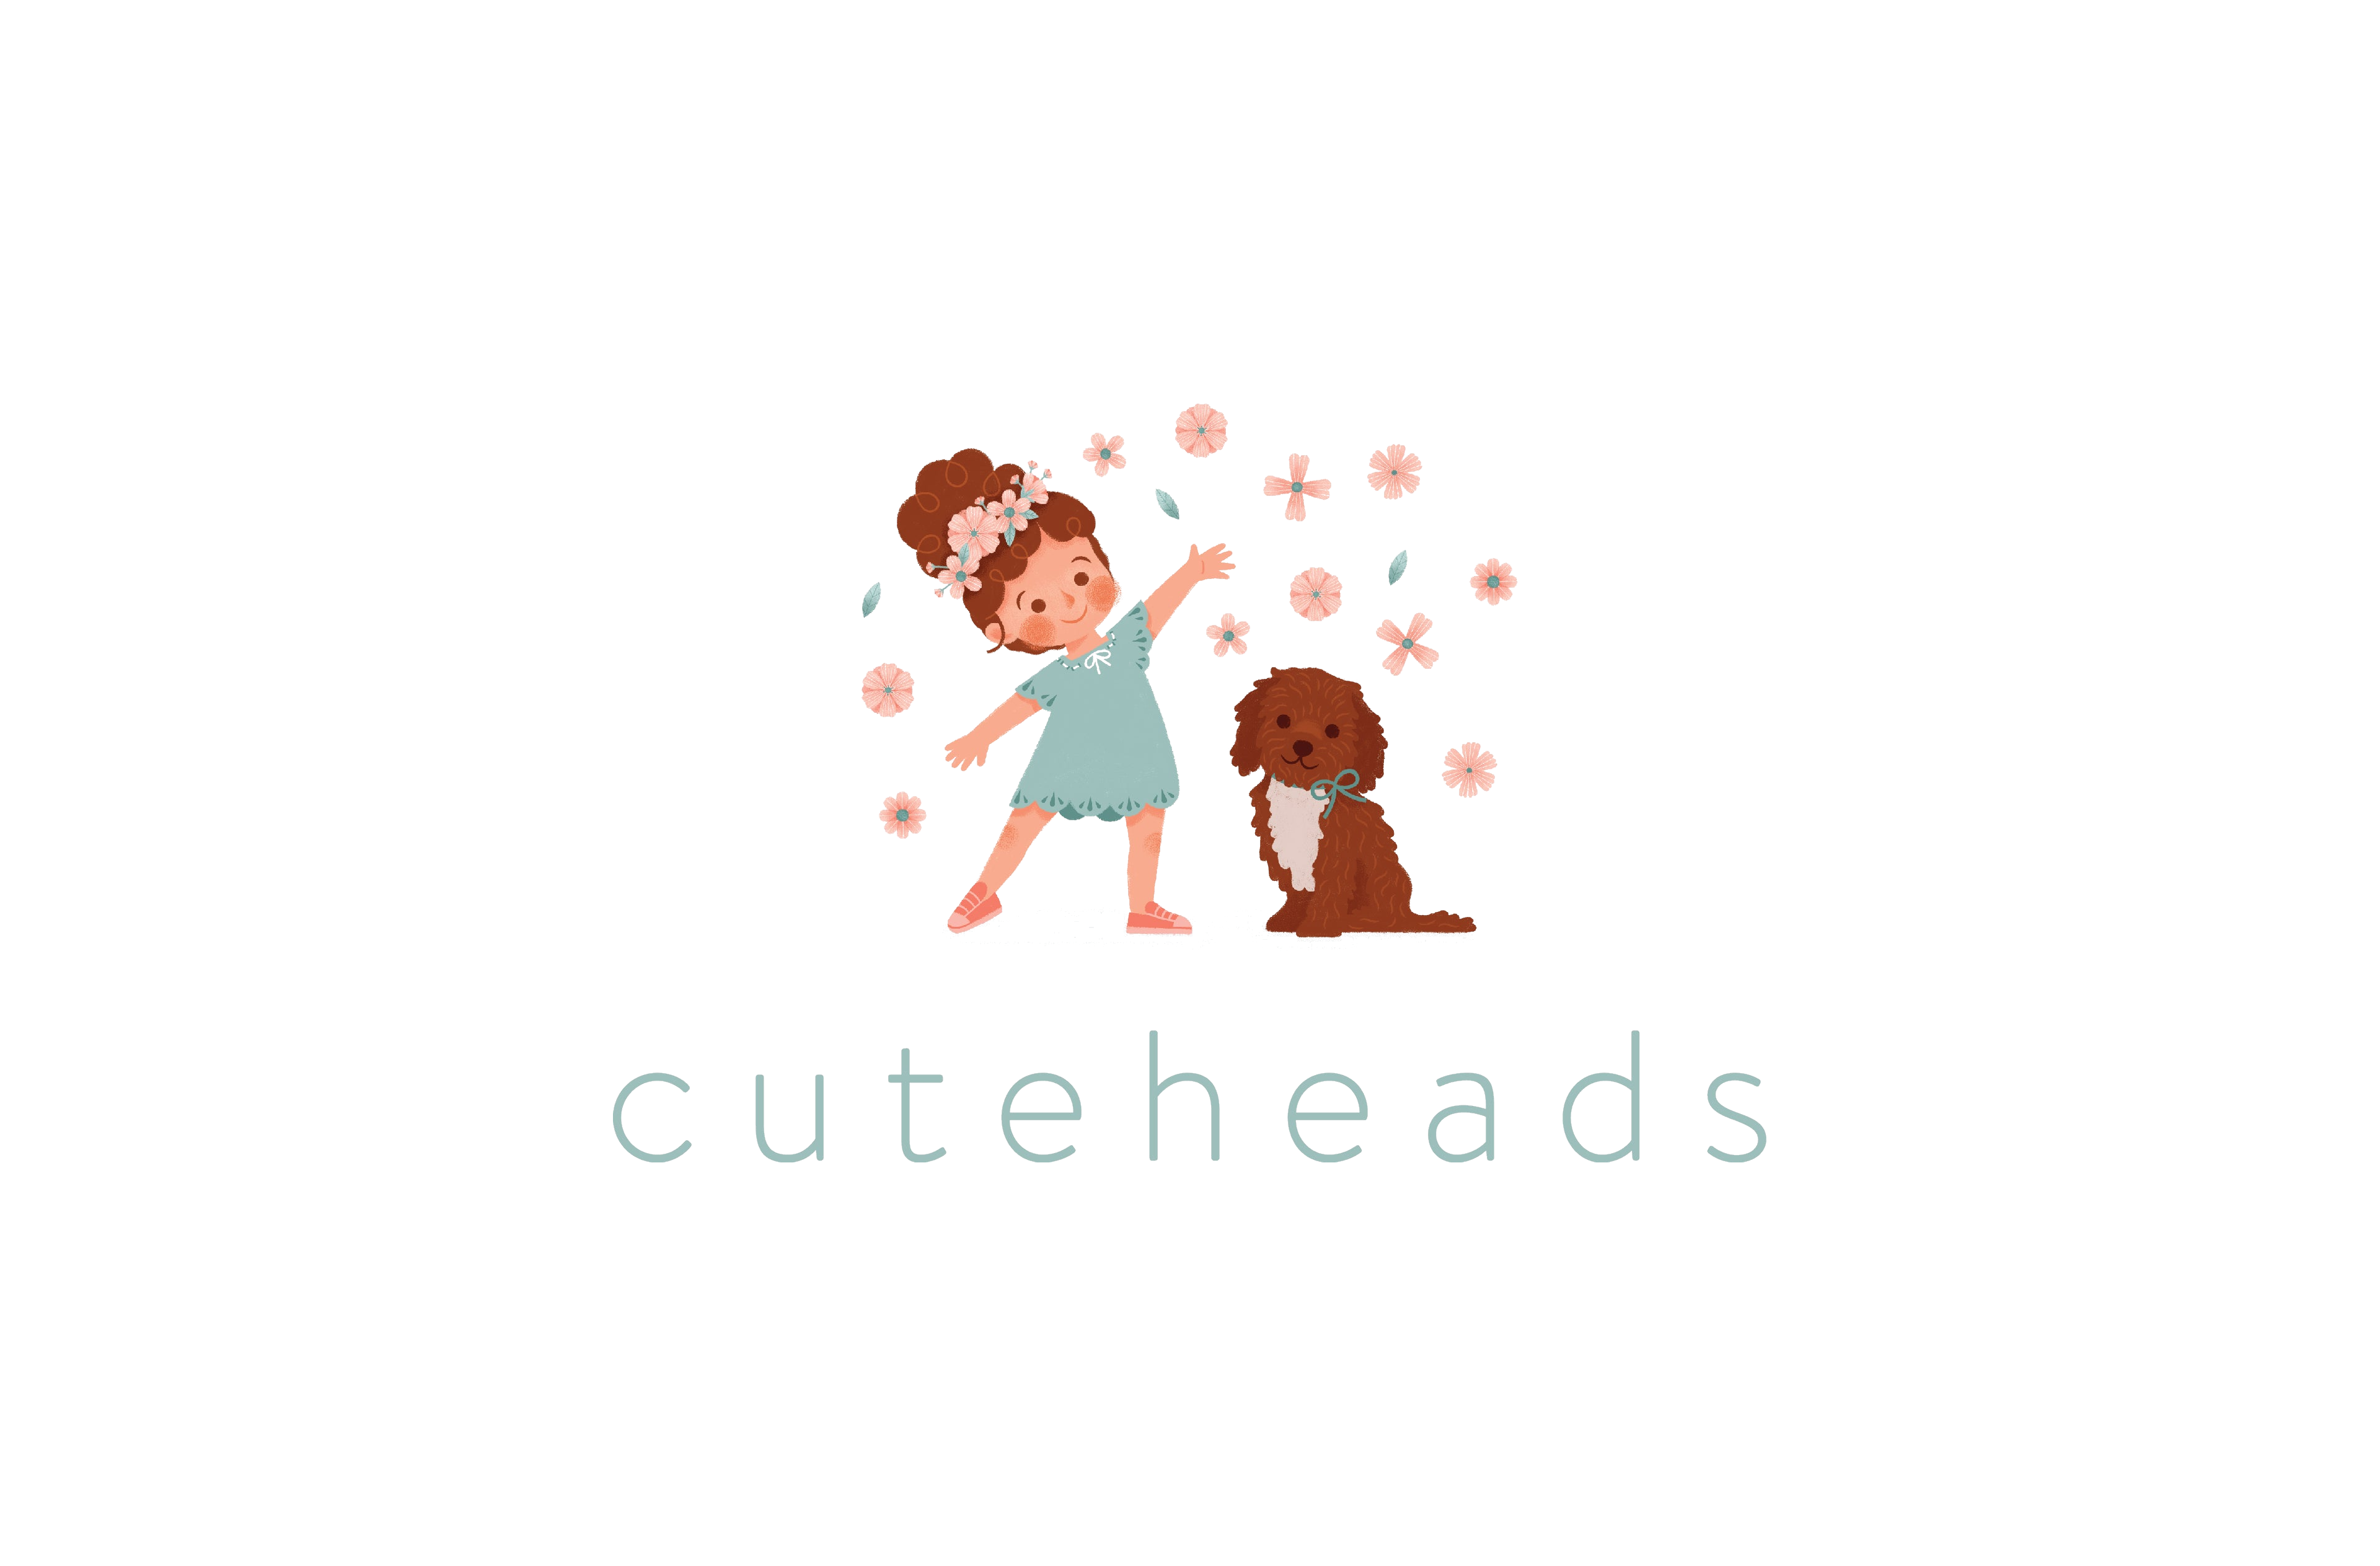 cuteheads